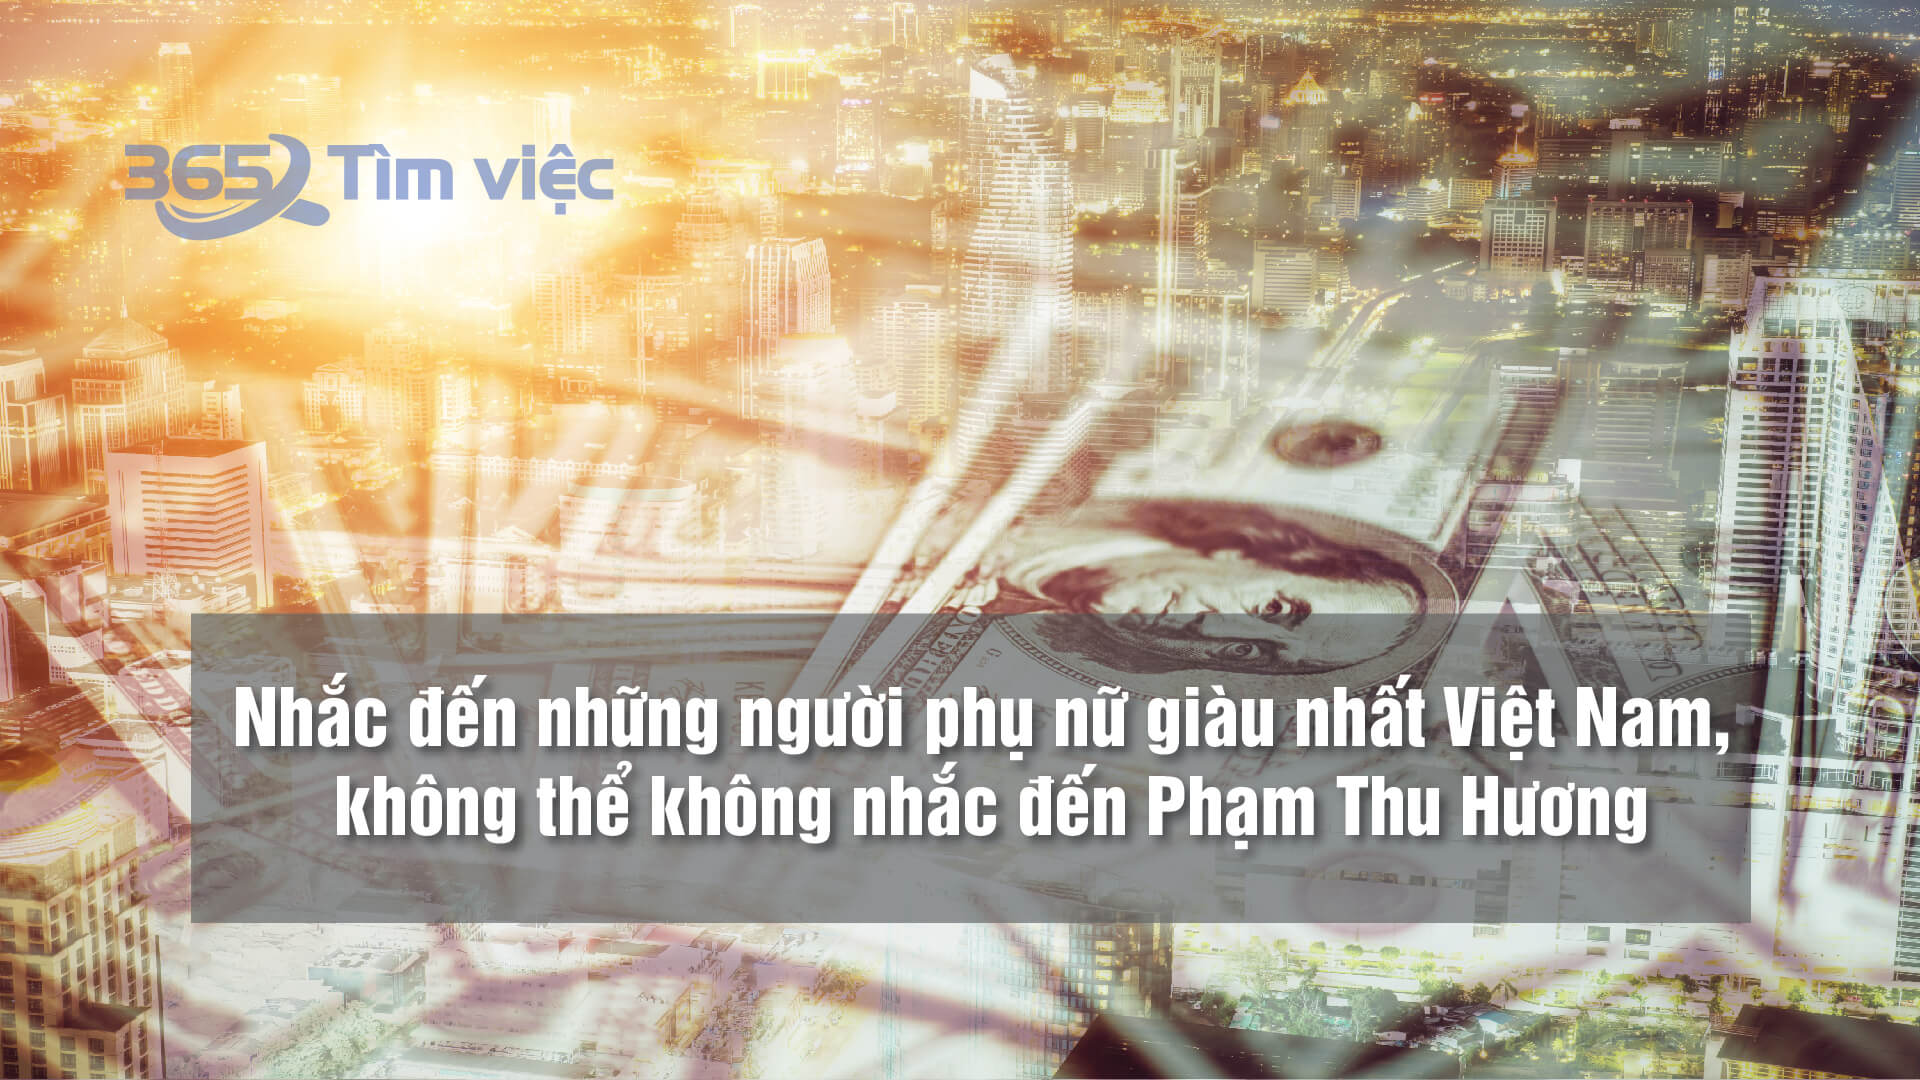 Phạm Thu Hương vốn được mệnh danh là nữ đại gia tuổi Dậu vì khối tài sản kếch xù